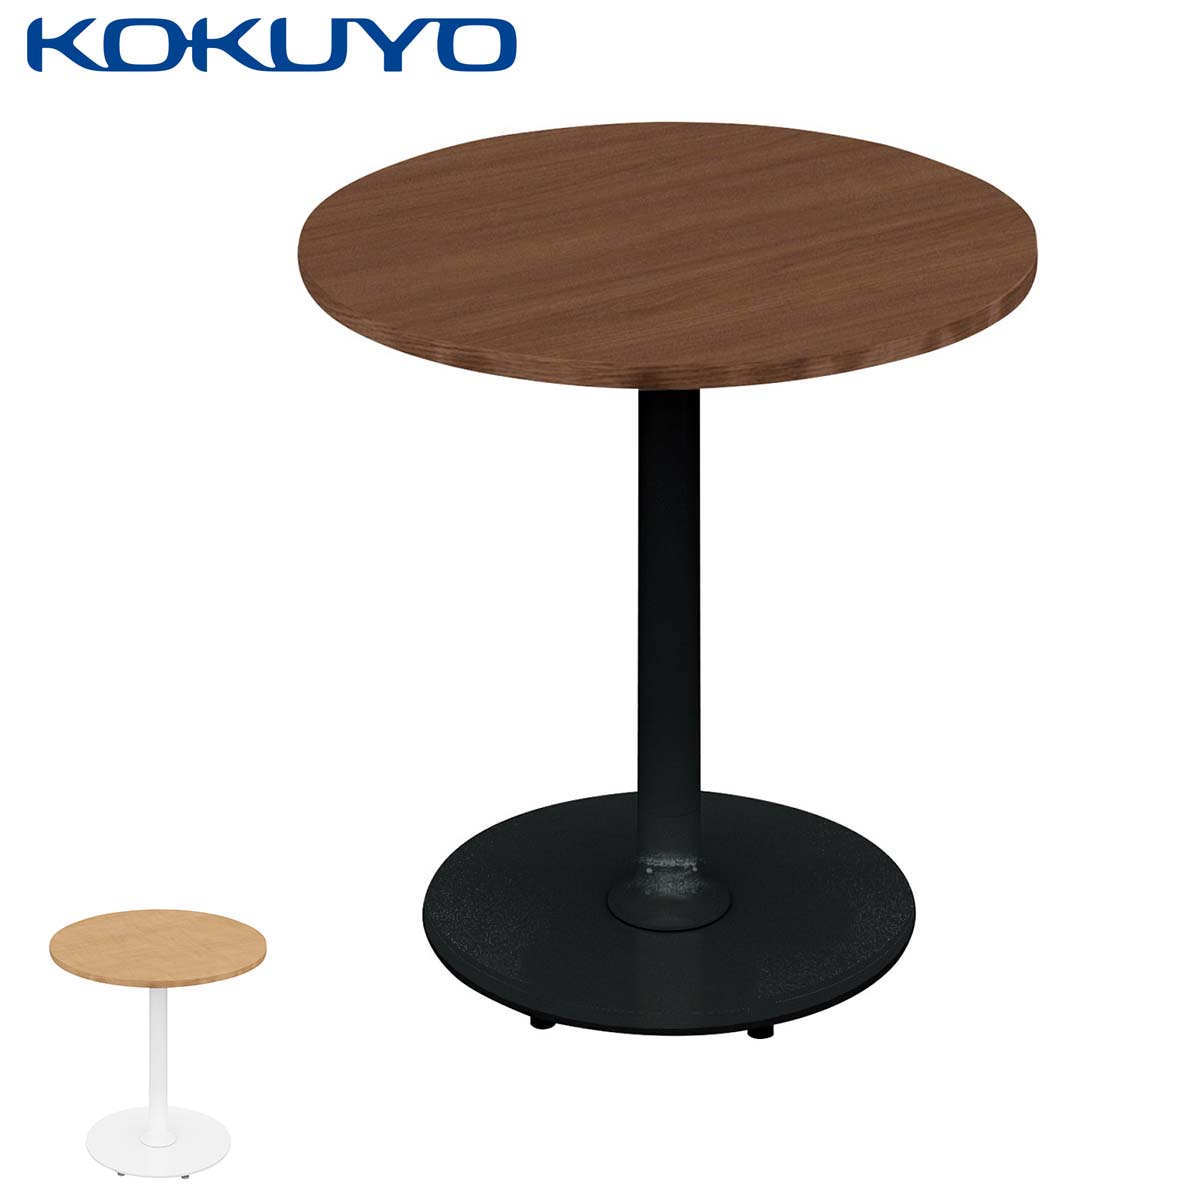 コクヨ ミーティングテーブル テーブル Franka フランカ TFK-SC0606KM 単柱脚テーブル スチール脚 円形 スタンダード天板 W60×D60×H62cm